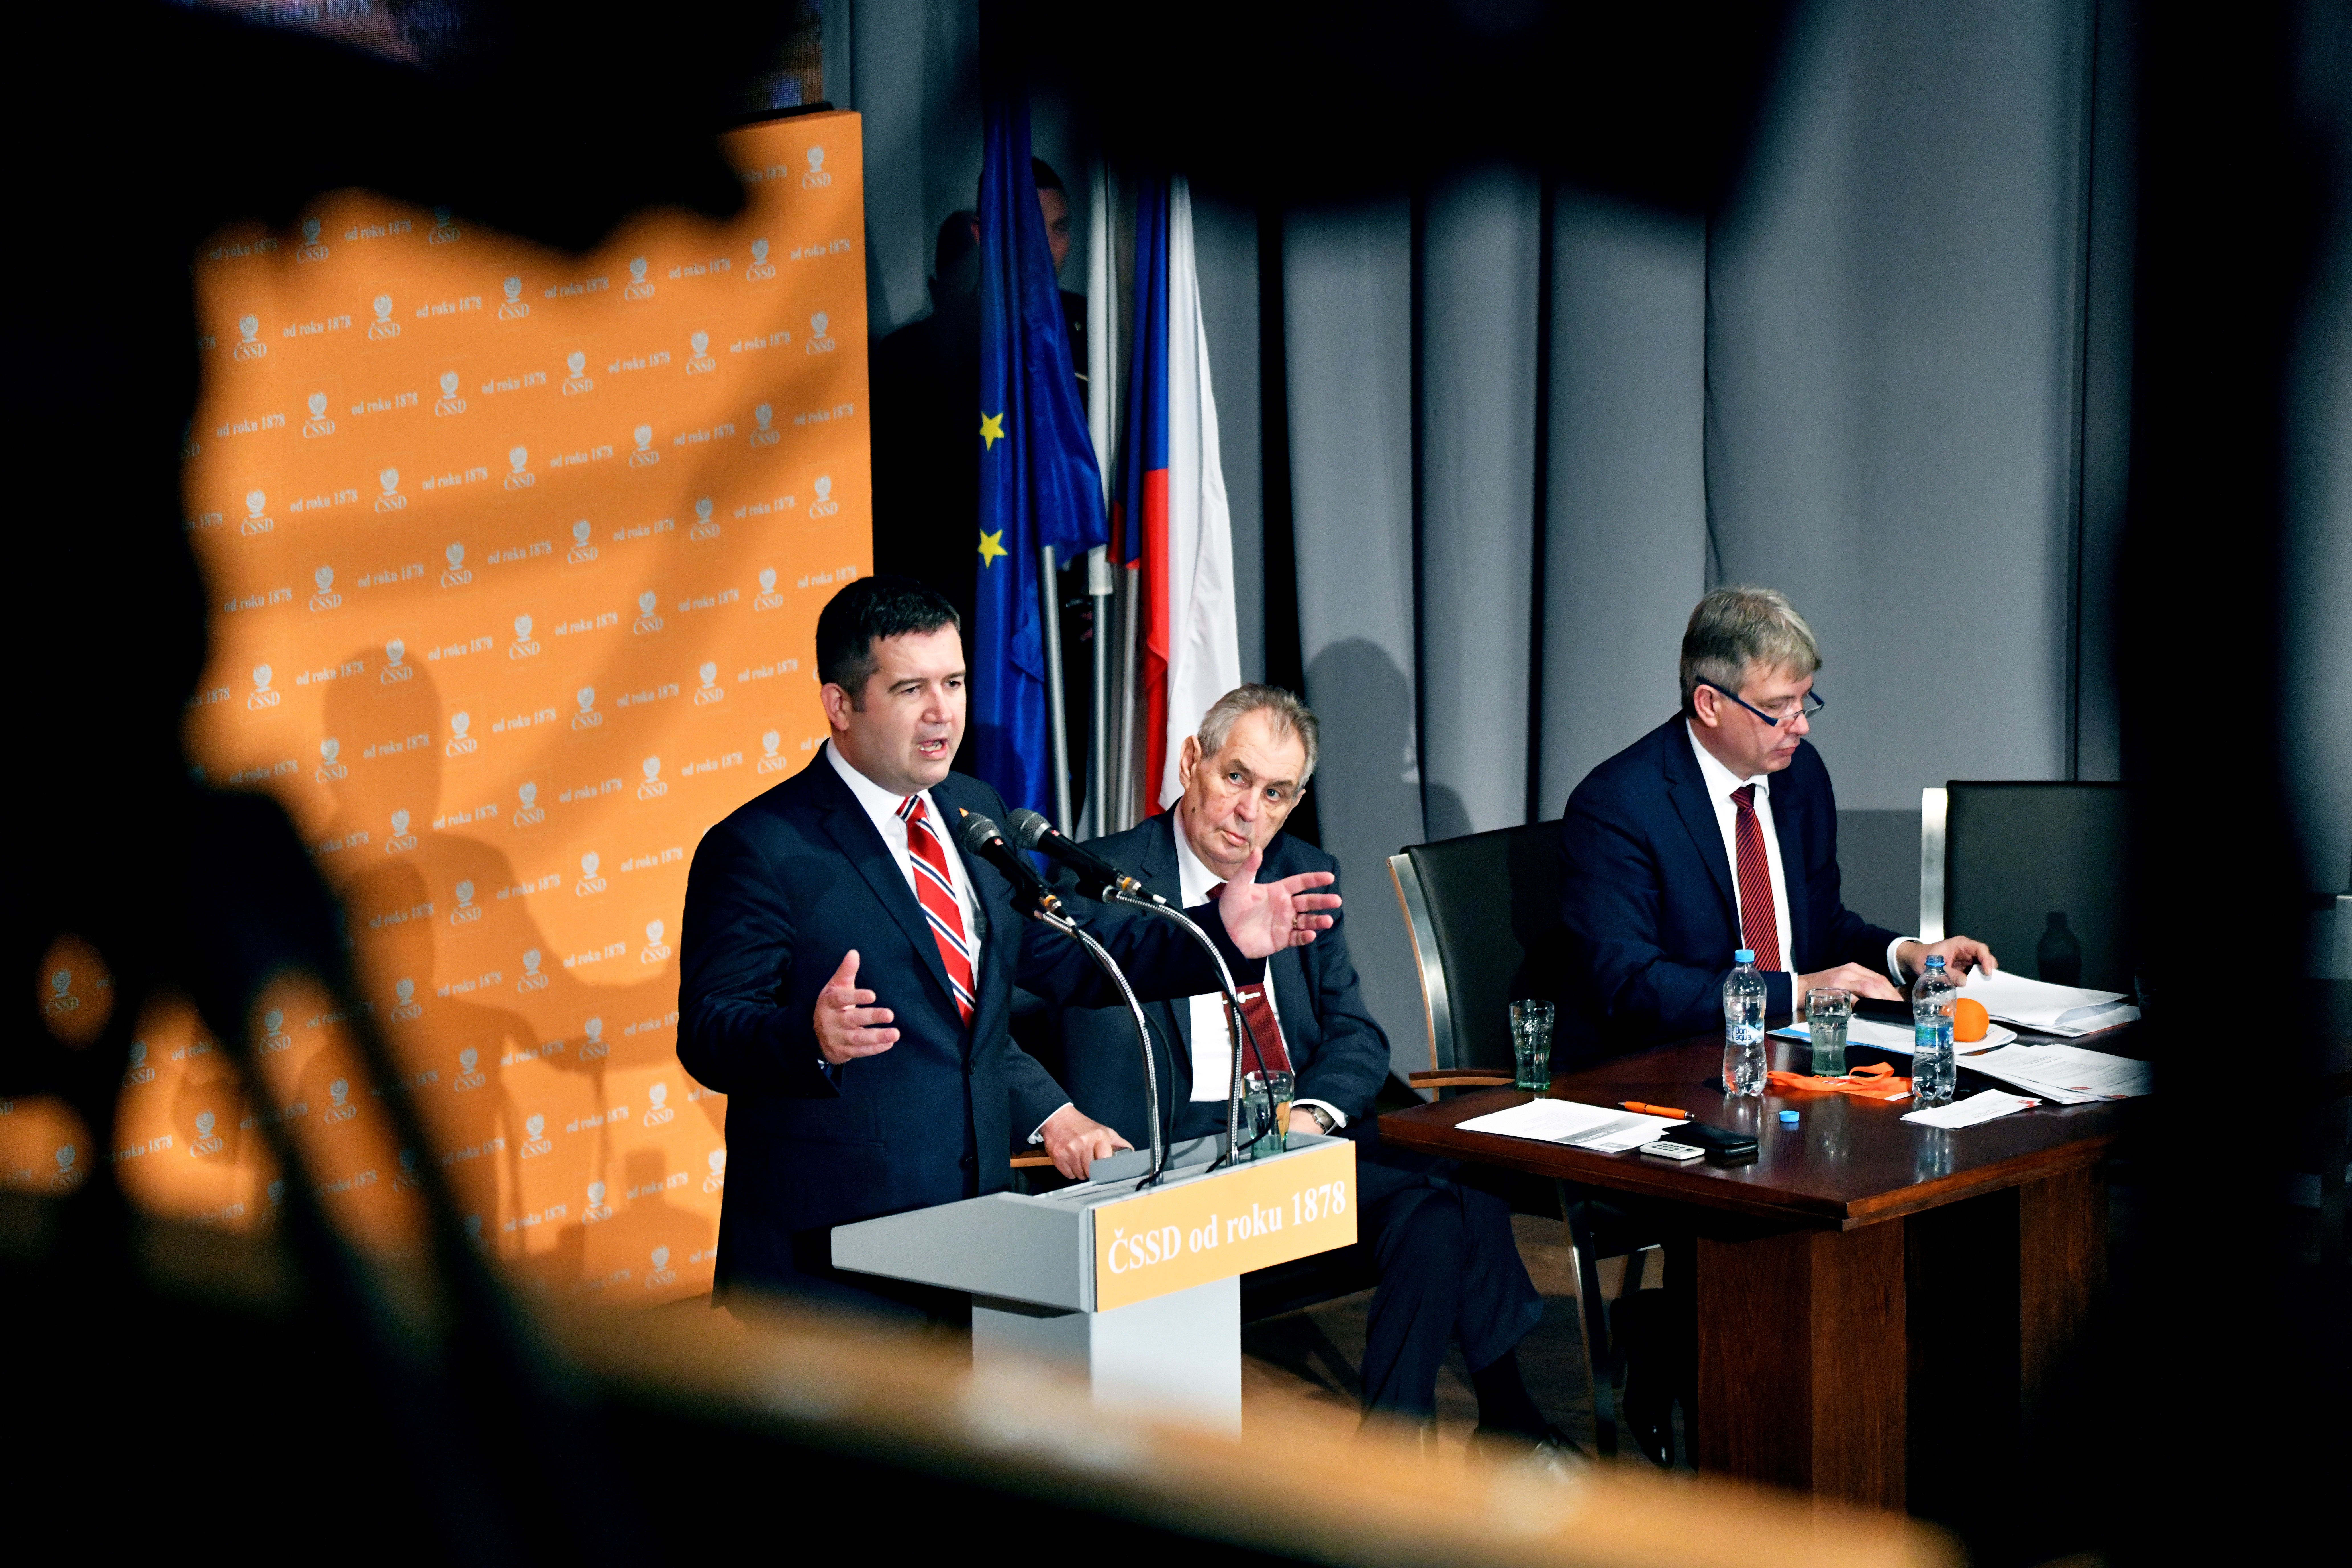 Projevu staronového předsedy ČSSD Jana Hamáčka o stavu strany v úvodu sjezdu přihlížel i prezident Miloš Zeman